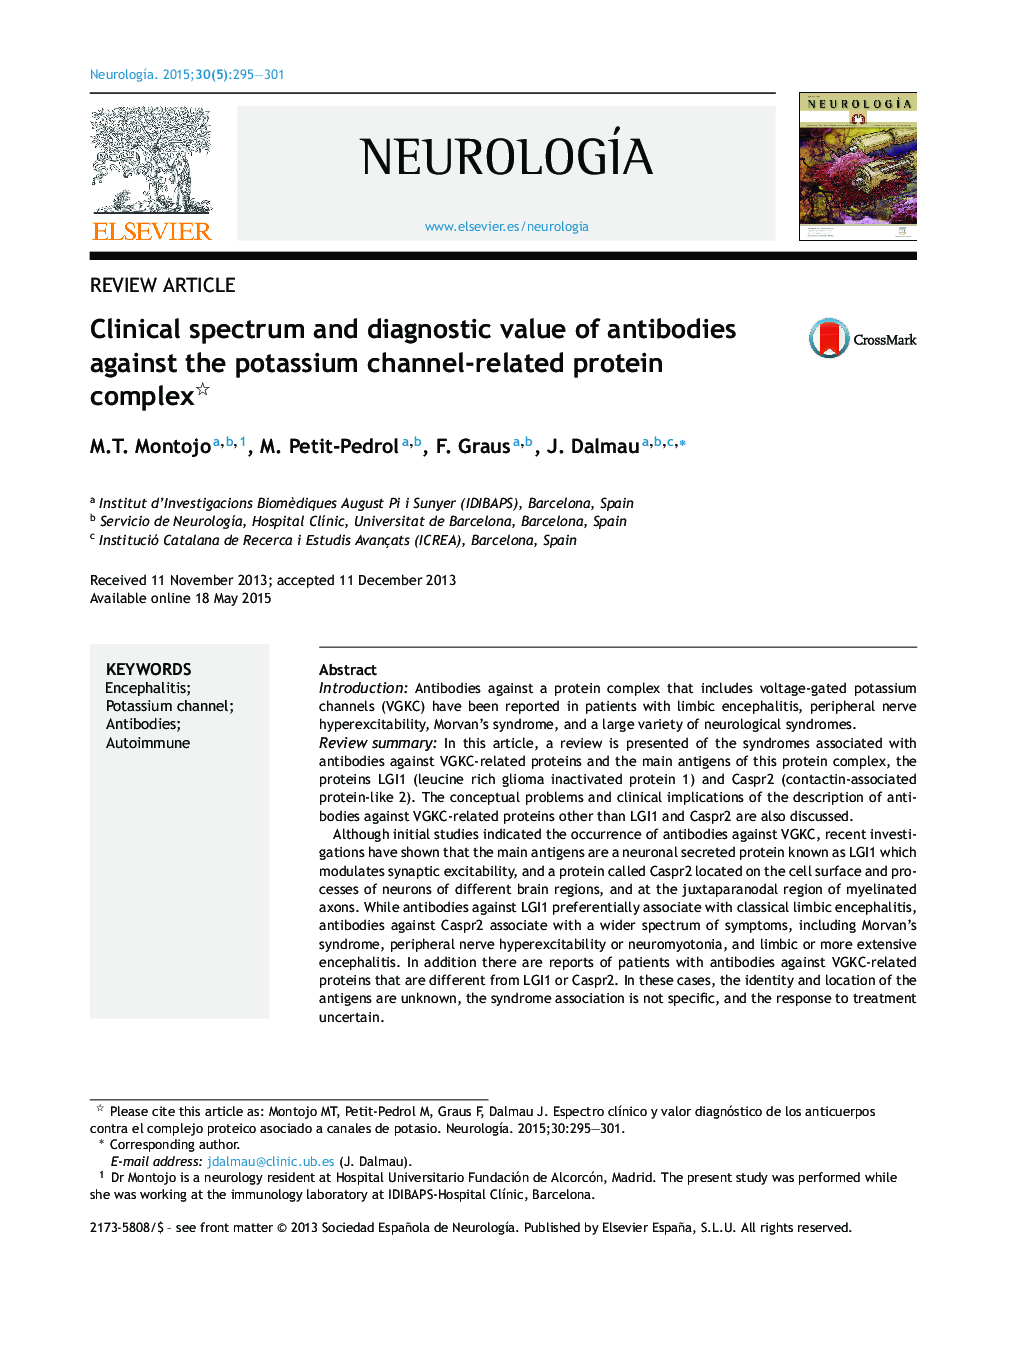 طیف بالینی و ارزش تشخیص آنتی بادی های پروتئینی مرتبط با کانال پتاسیم 